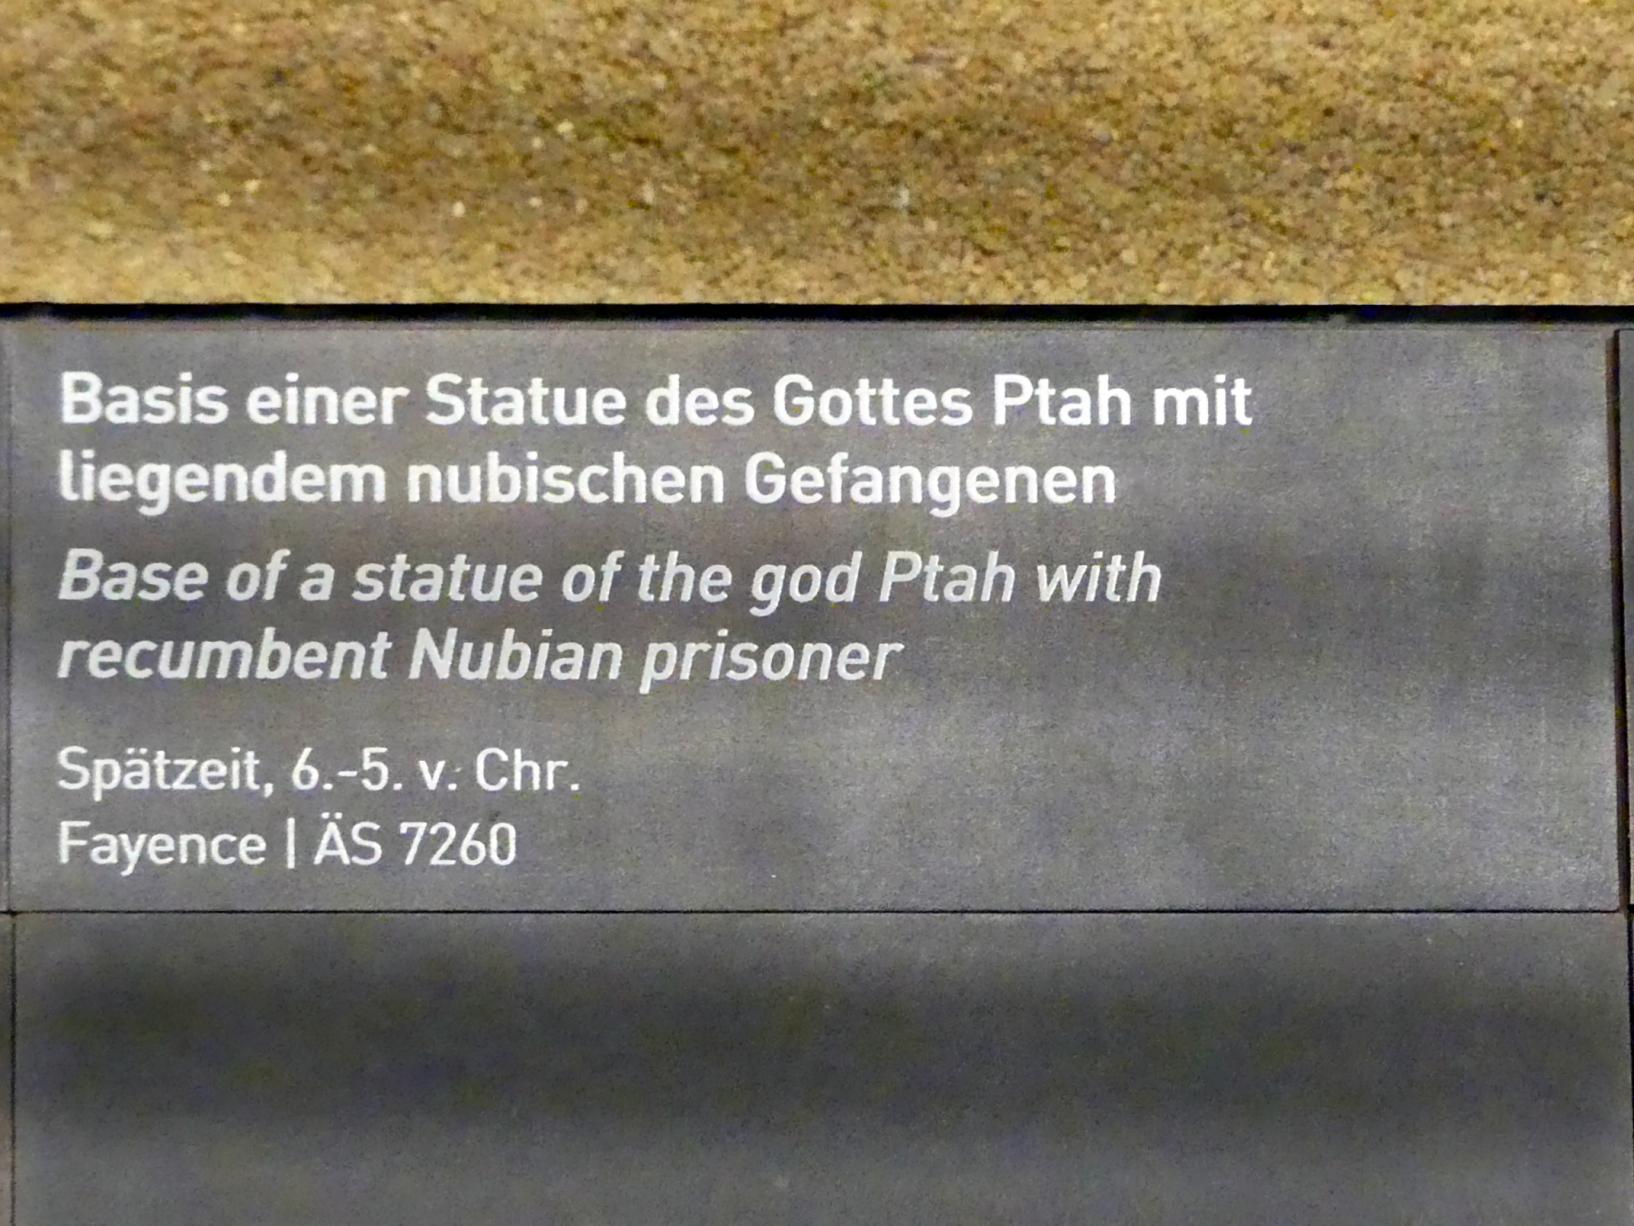 Basis einer Statue des Gottes Ptah mit liegendem nubischen Gefangenen, Spätzeit, 360 - 342 v. Chr., 600 - 400 v. Chr., Bild 2/2